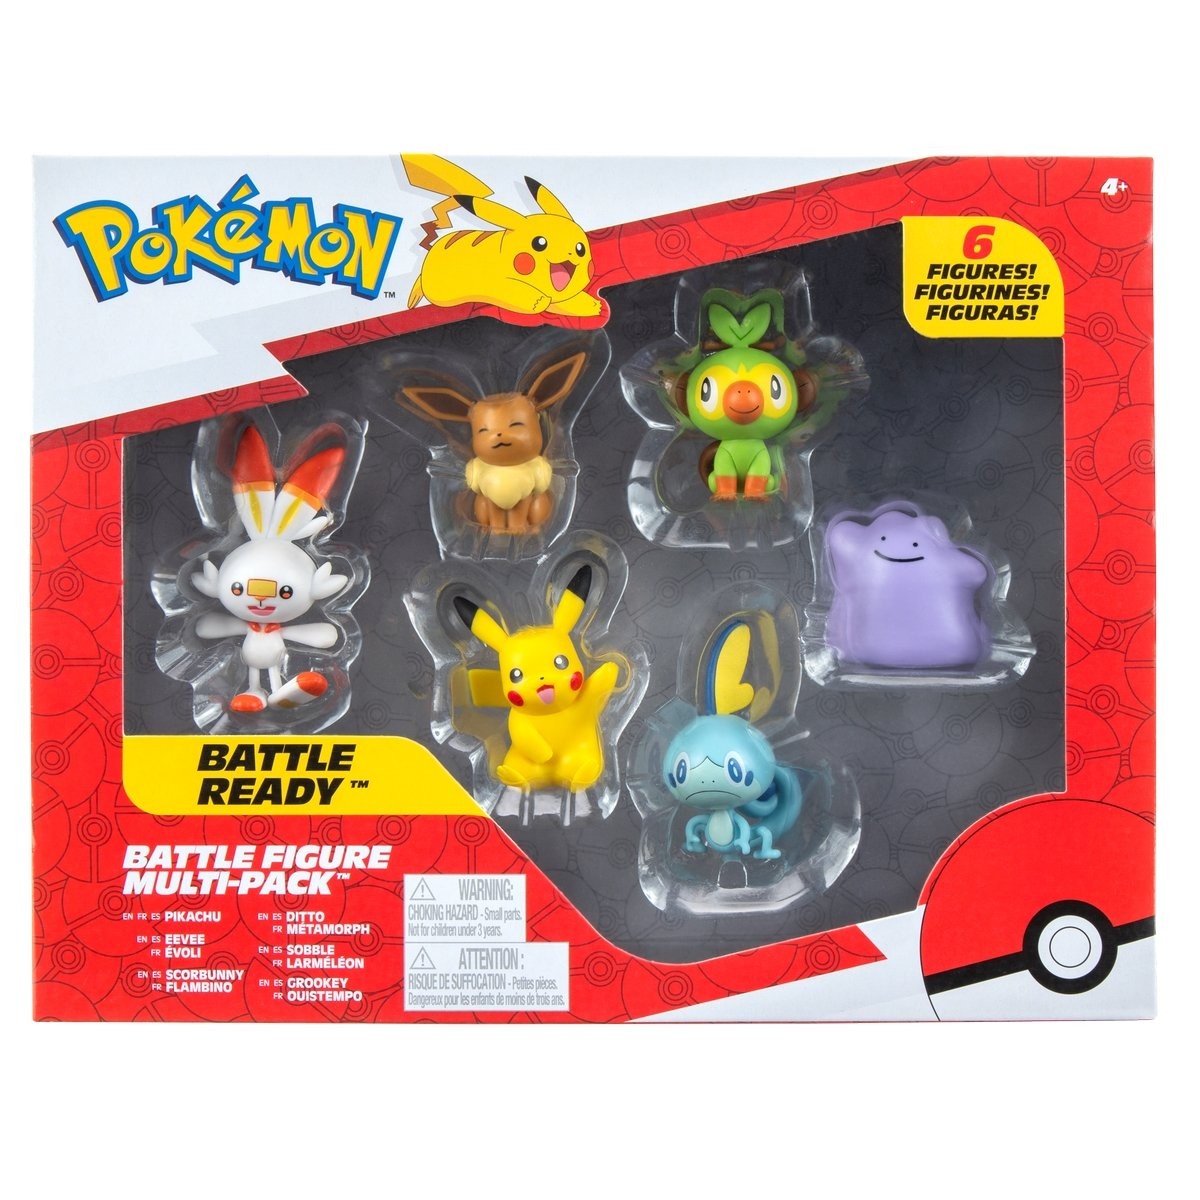 Cartes Pokémon, figurines et jouets - Top idées cadeau Pokémon